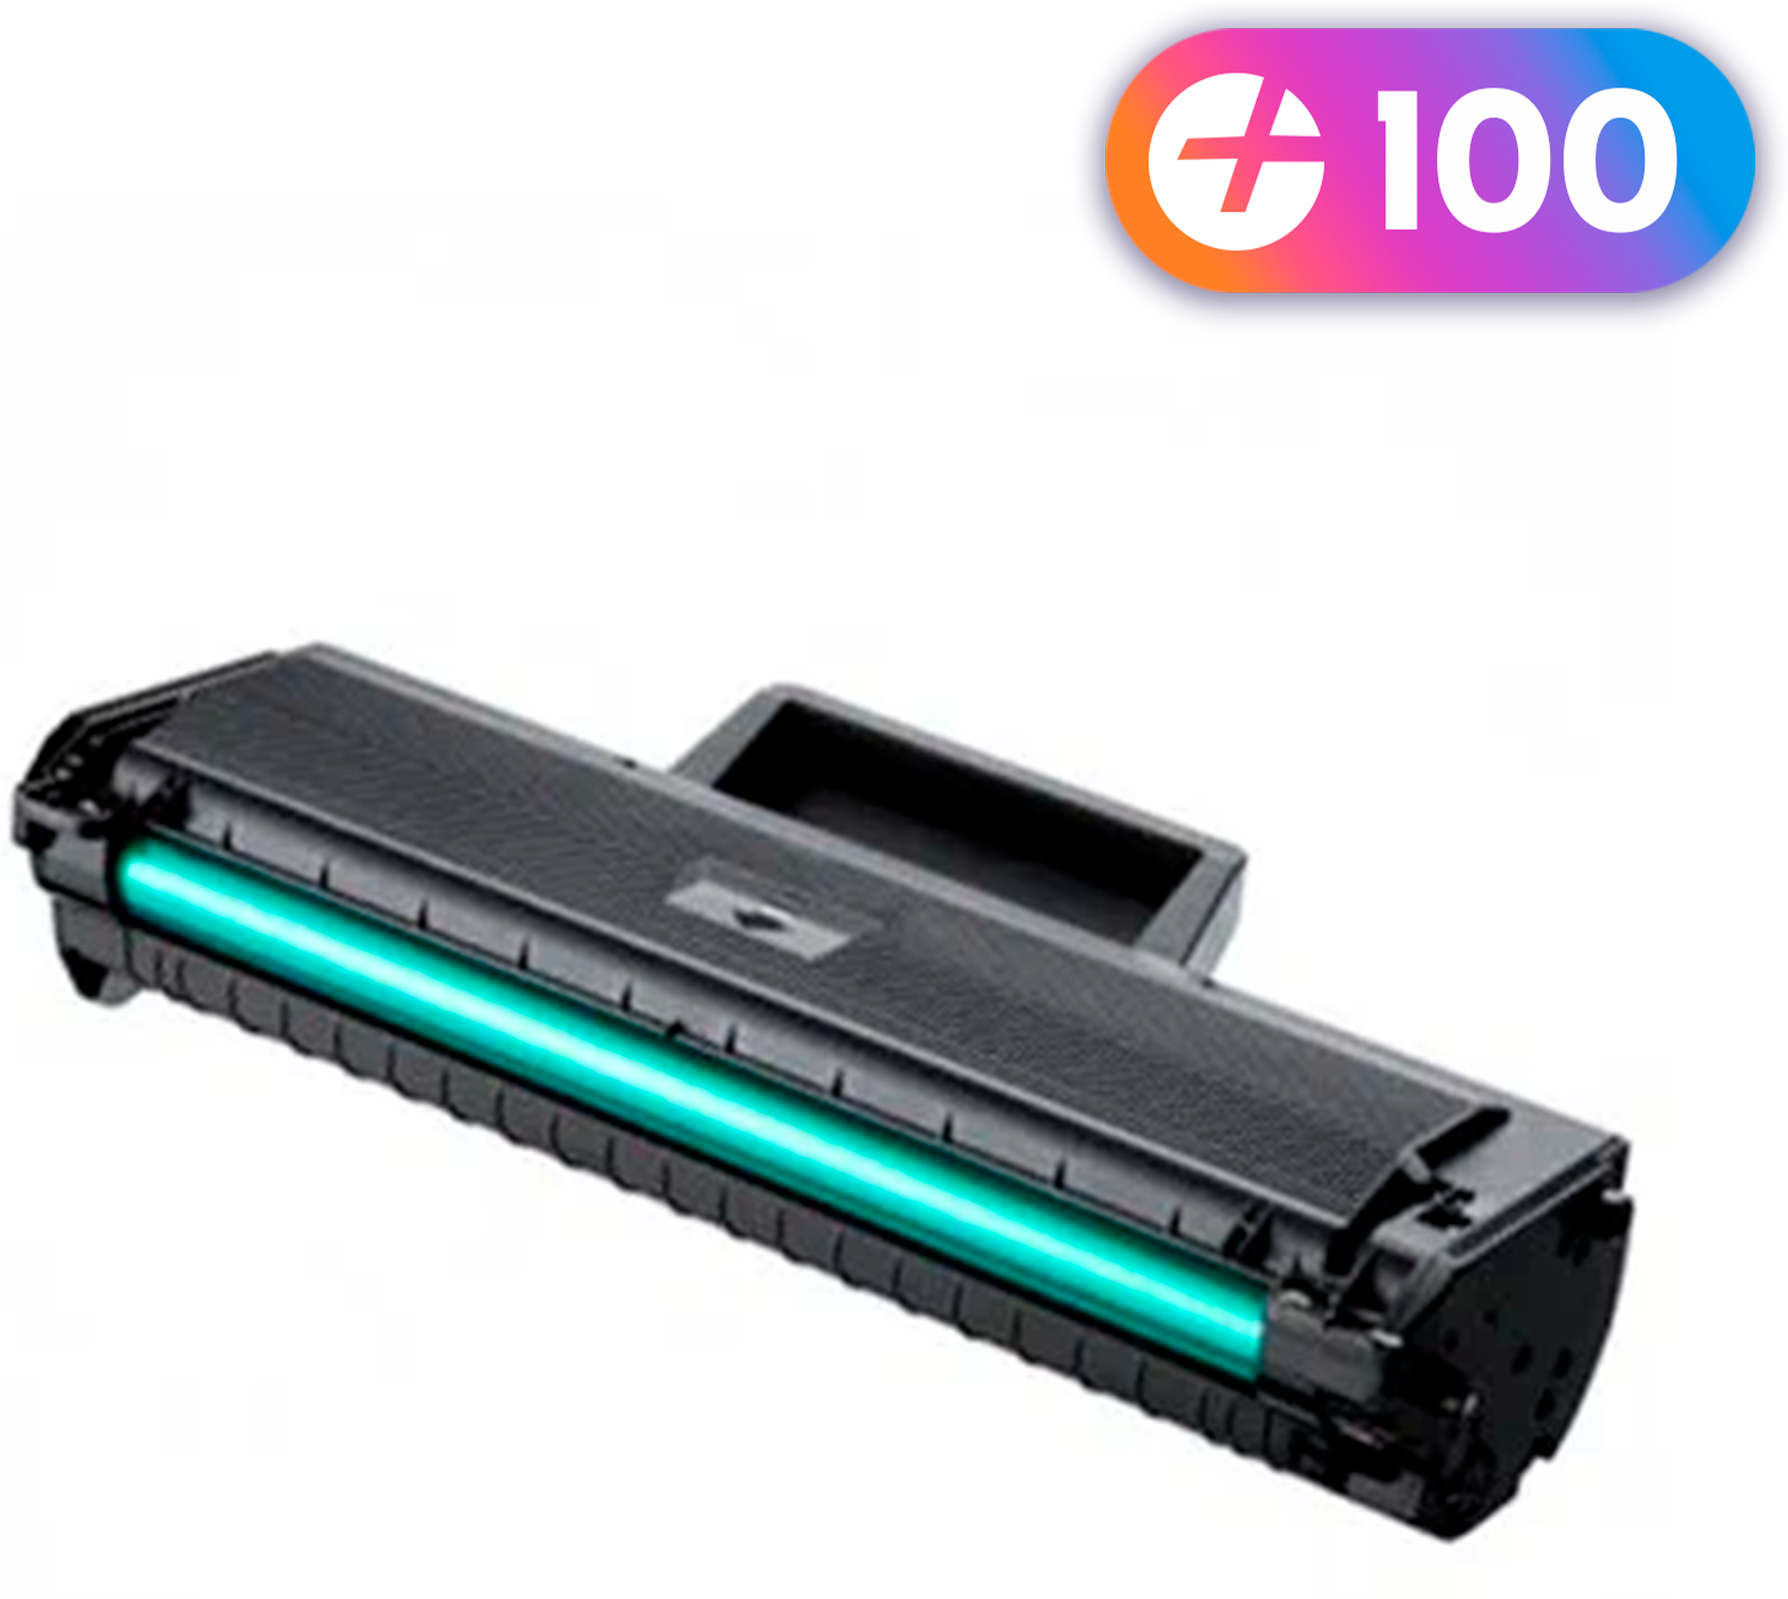 Лазерный картридж NV Print для Samsung ML-2160, 2165, 2167, 2168, SCX-3400, 3405, 3407 и др. с краской (тонером) черный новый заправляемый, 1500 копий